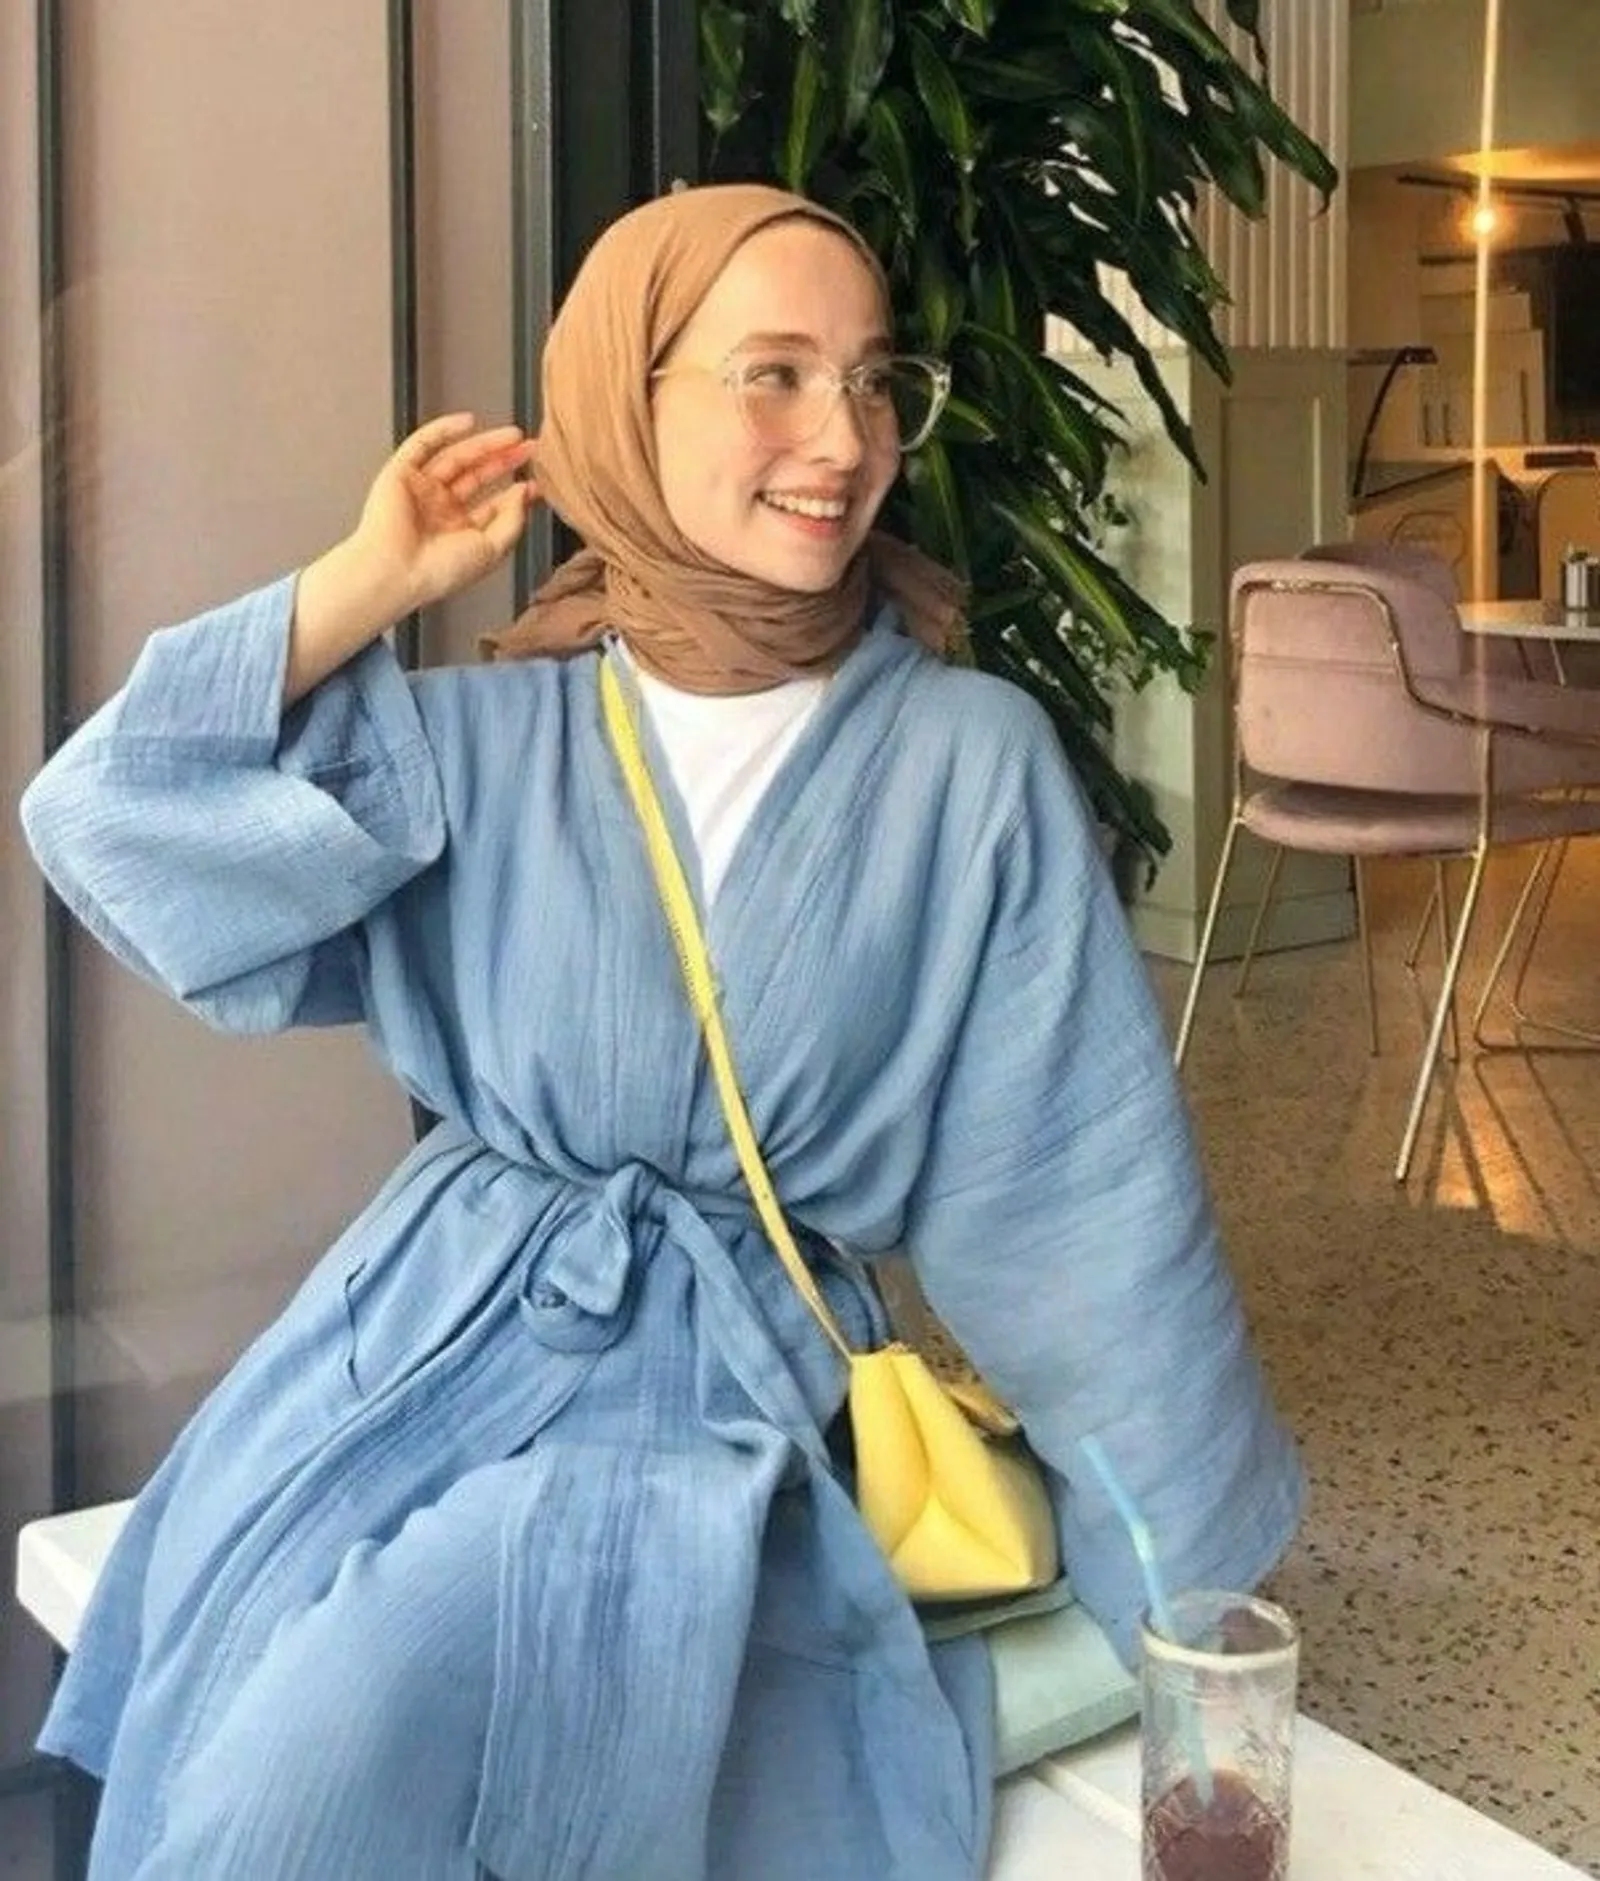 12 Warna Jilbab yang Cocok untuk Baju Biru Denim, Elegan!